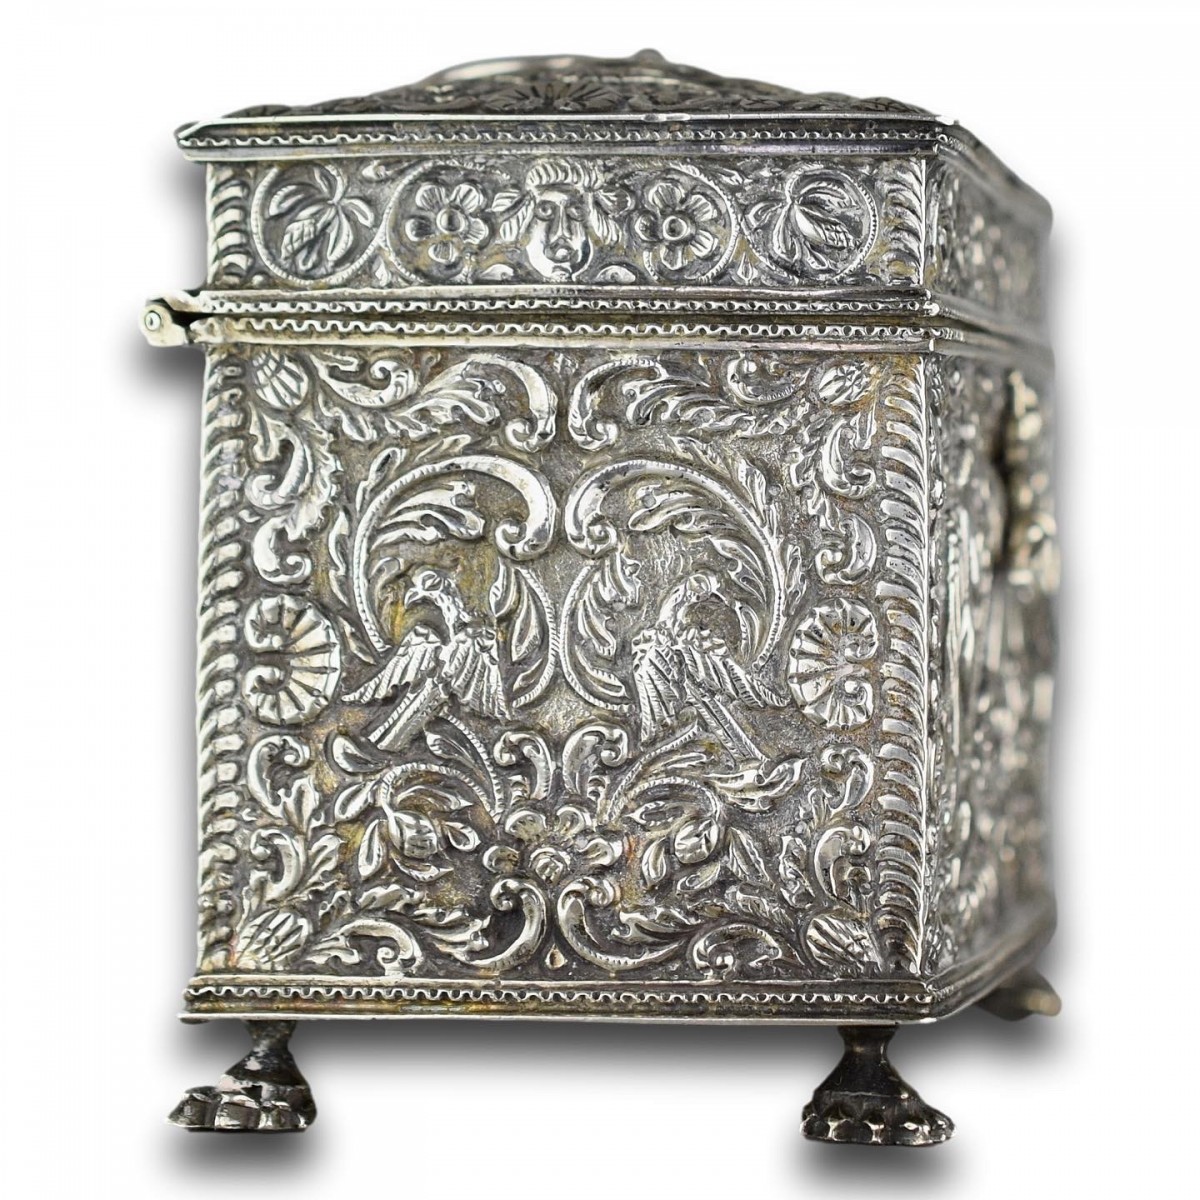 Repoussé silver marriage casket, Dutch19th century - Ref.103324